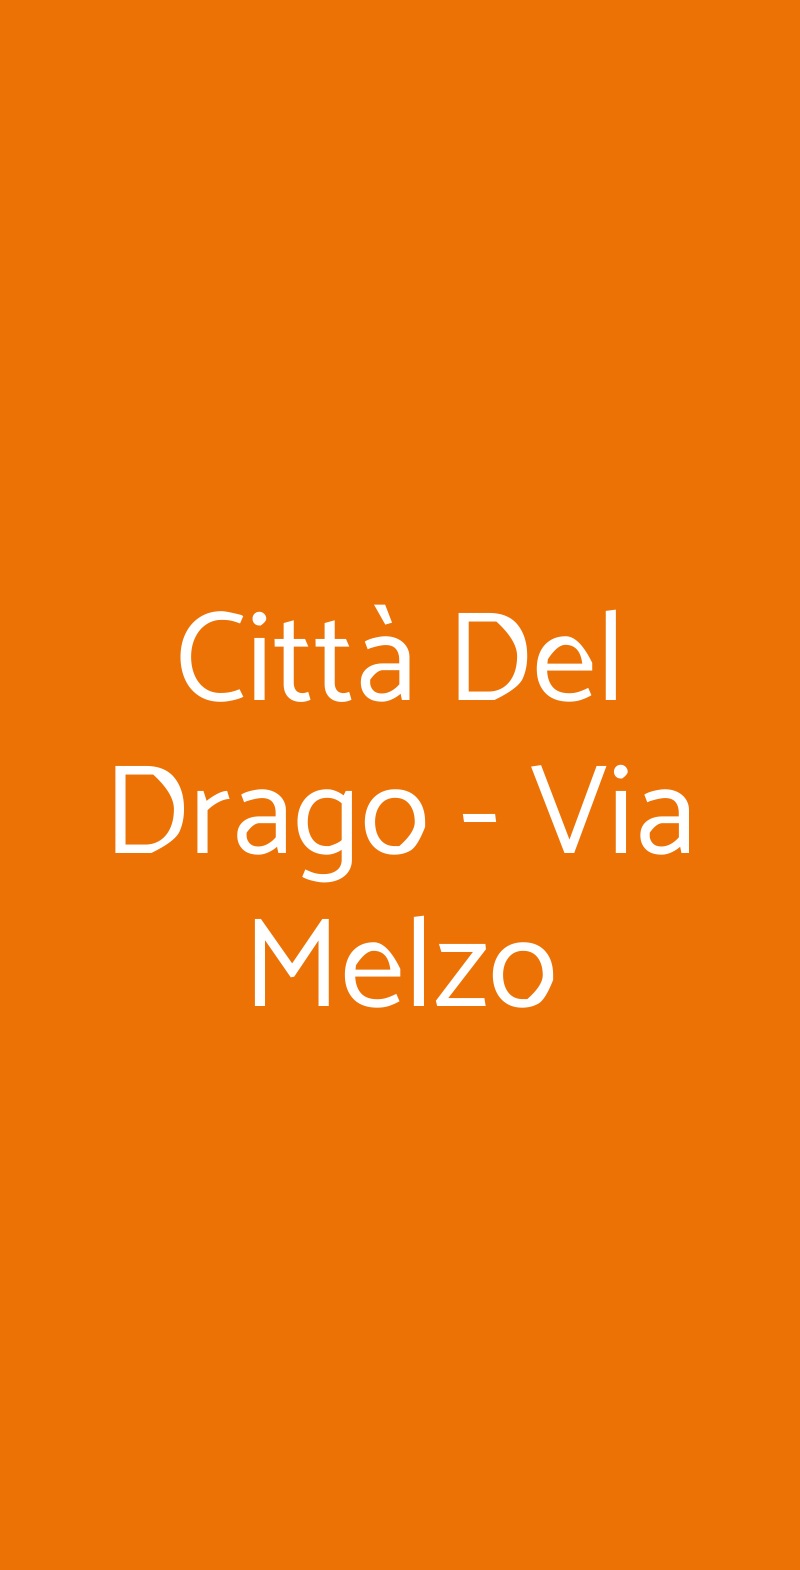 Città Del Drago - Via Melzo Milano menù 1 pagina